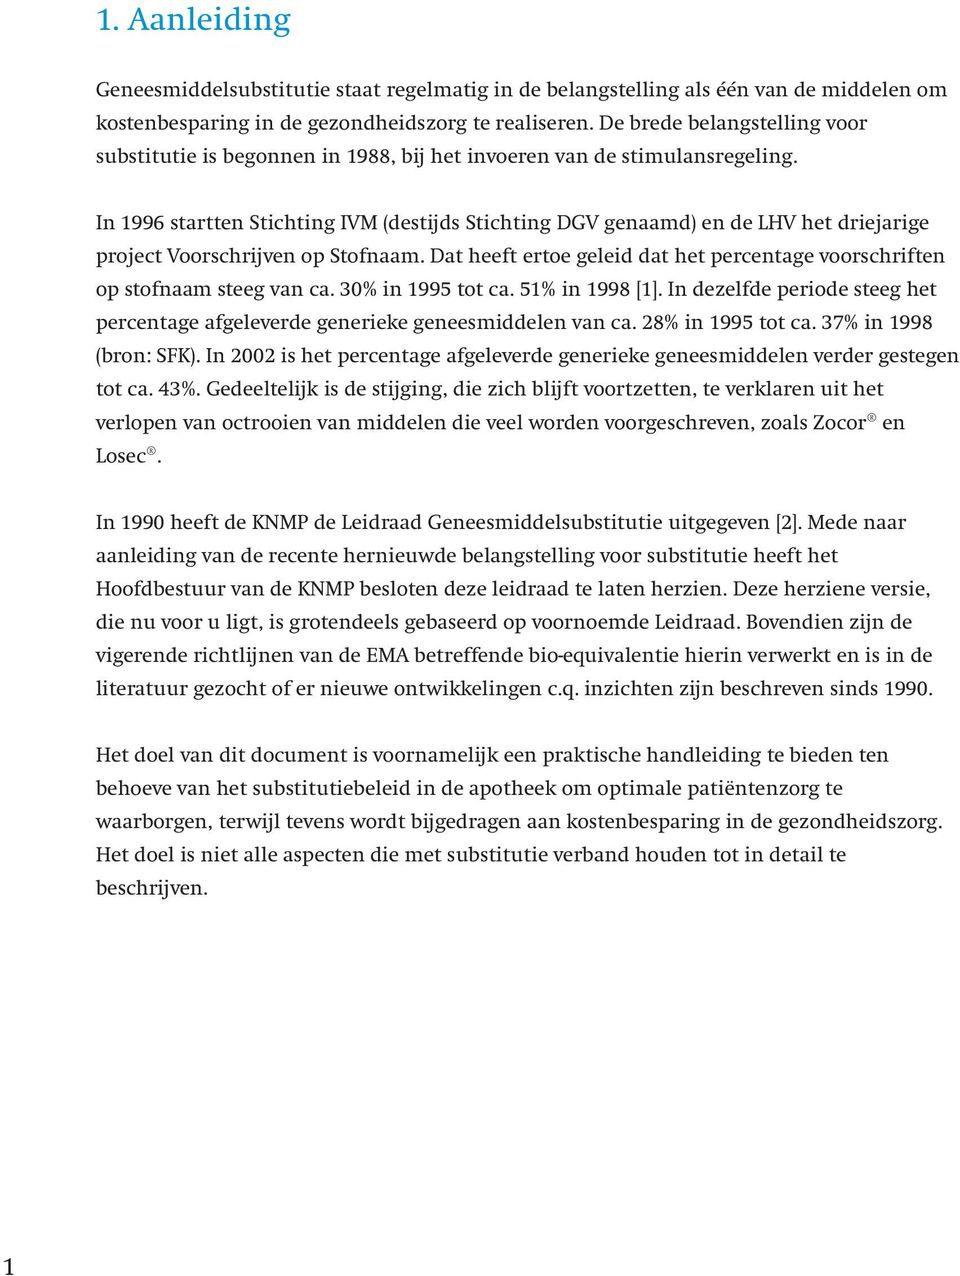 In 1996 startten Stichting IVM (destijds Stichting DGV genaamd) en de LHV het driejarige project Voorschrijven op Stofnaam.